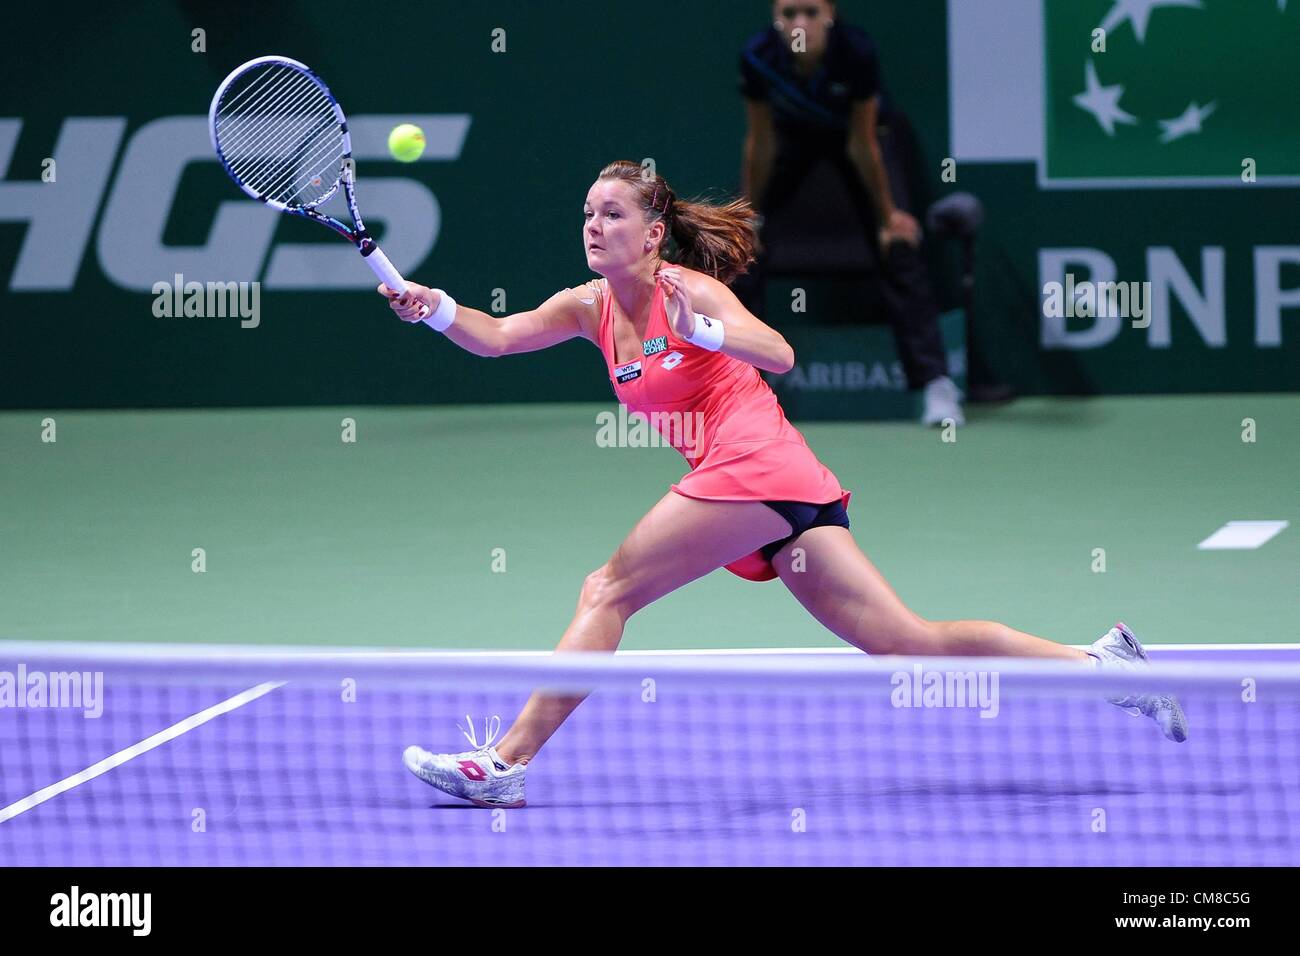 26.10.2012. Istanbul, Turchia. Agnieska Radwanska POL Masters di tennis femminile WTA Tennis donne Istanbul 26 10 2012 Foto Stock